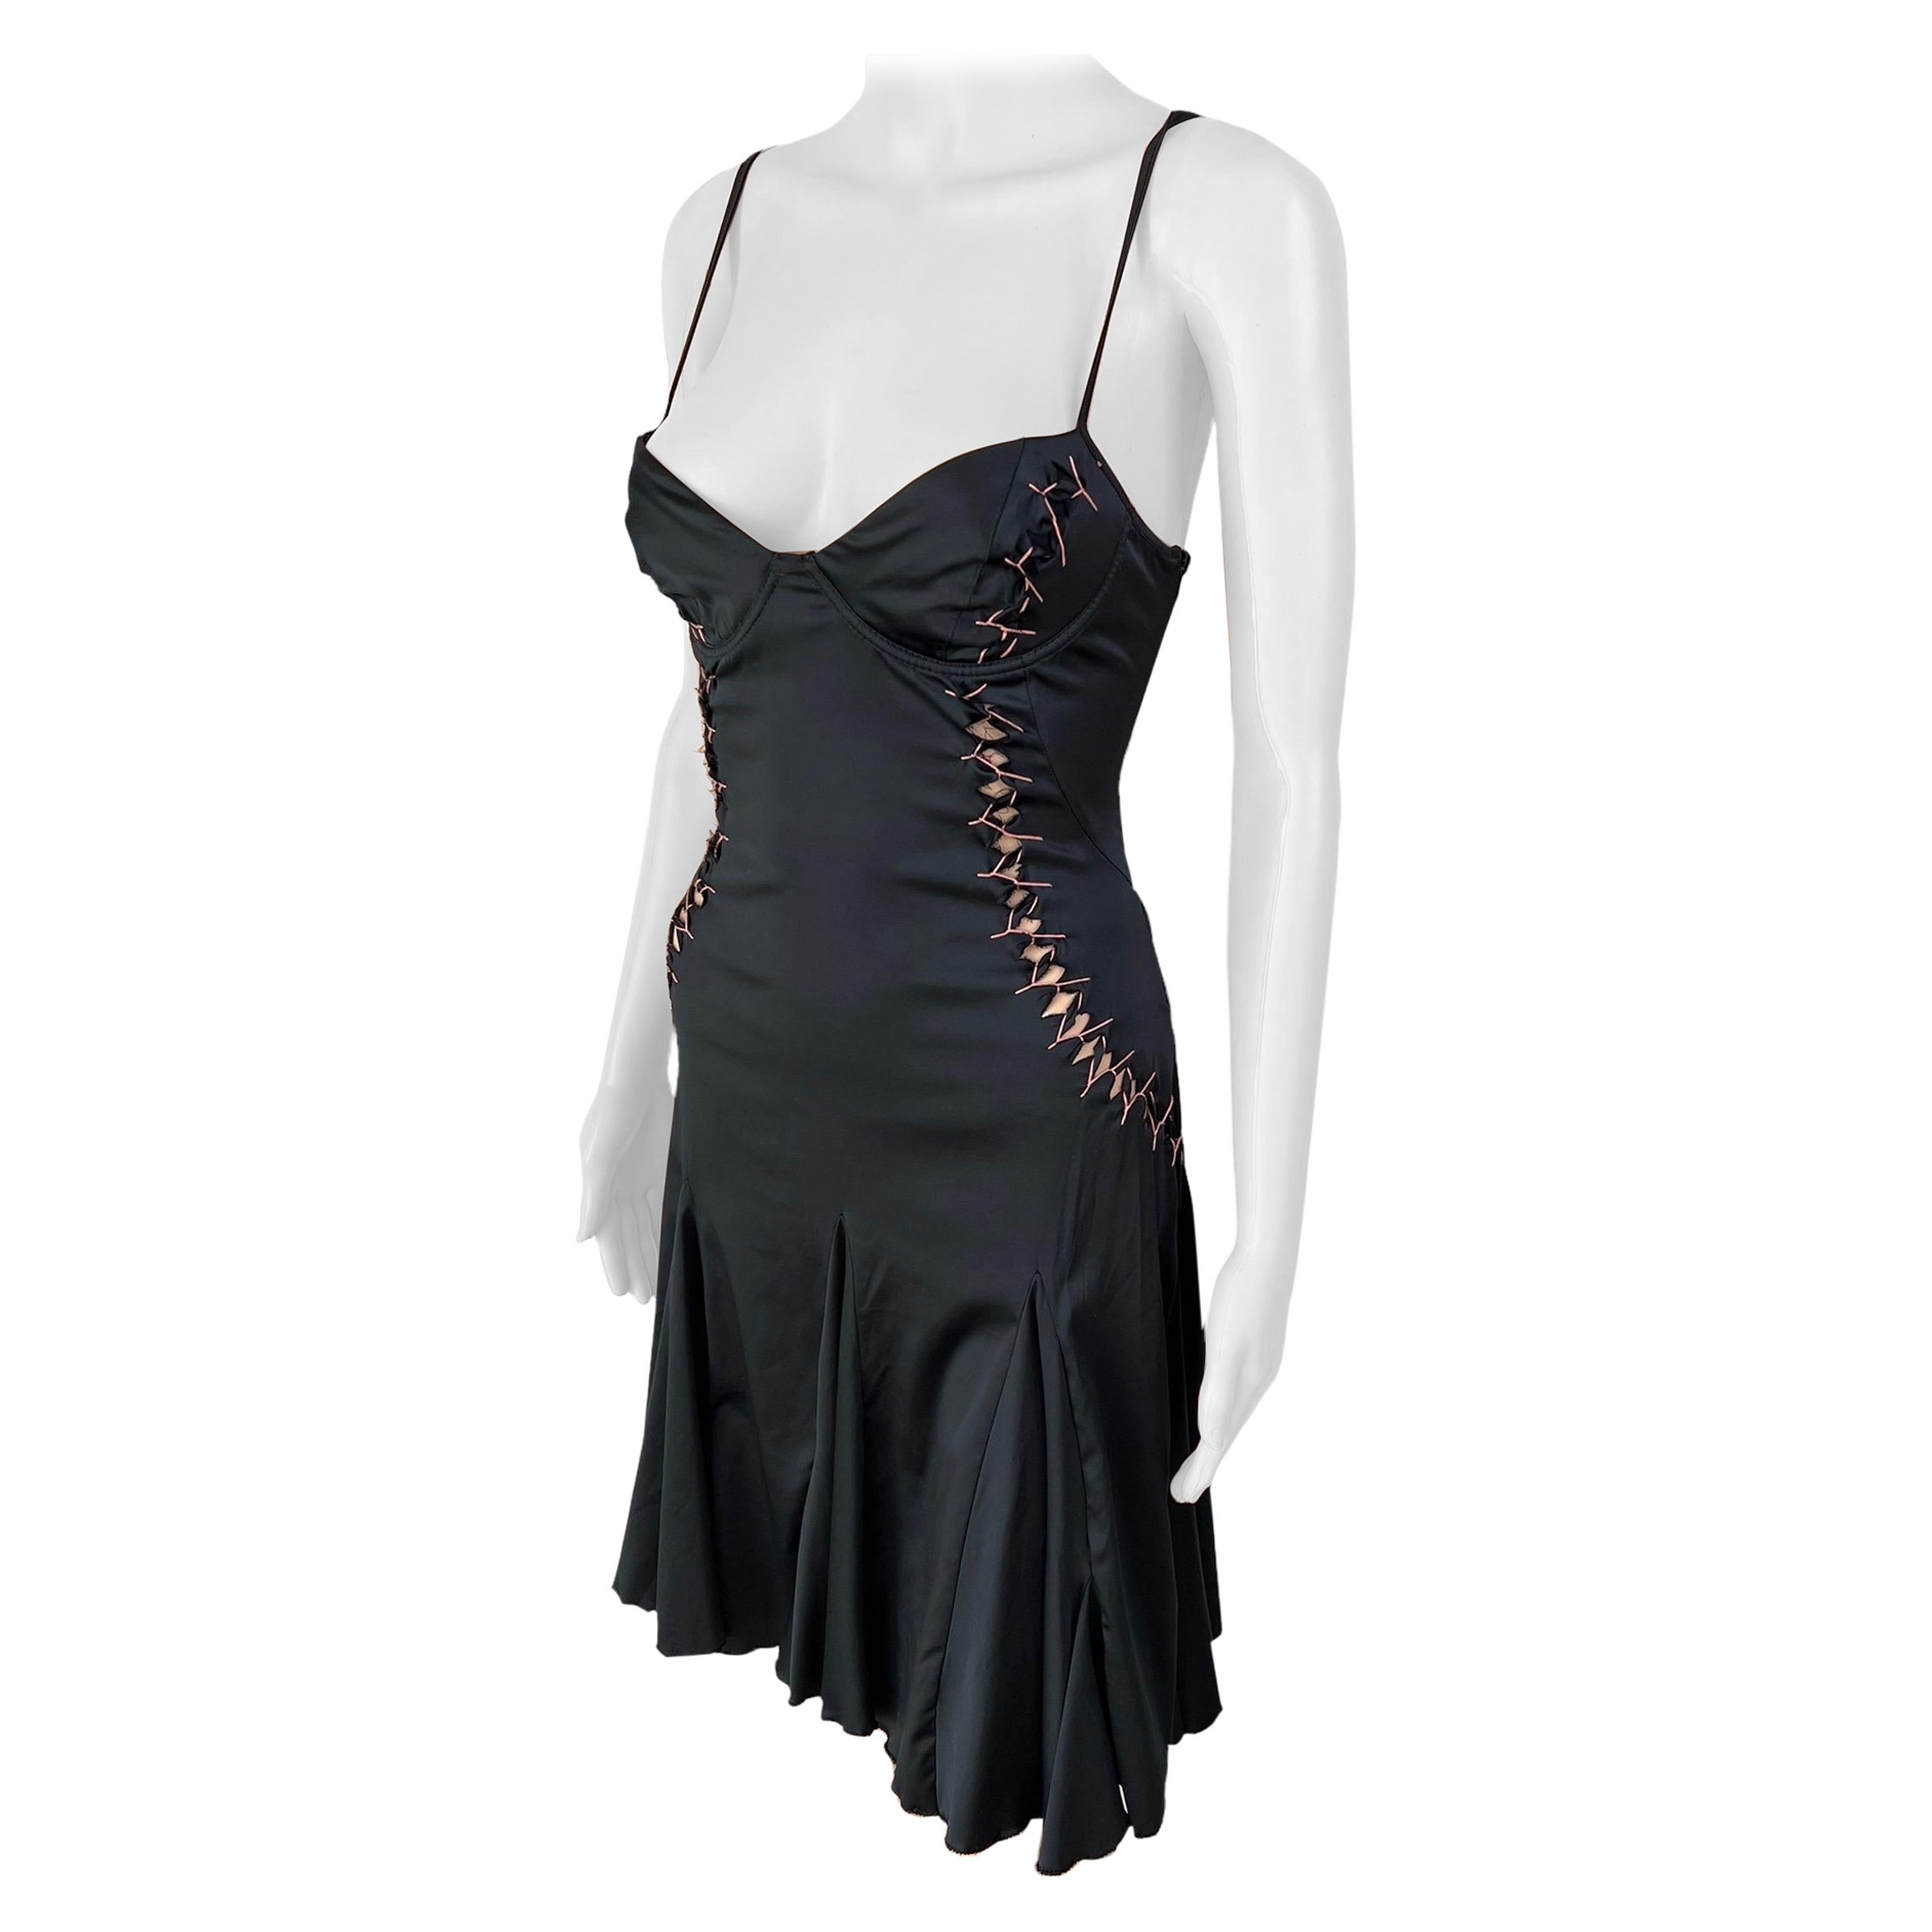 Roberto Cavalli Just Cavalli Lace Up Cutout Bustier Black Mini Dress